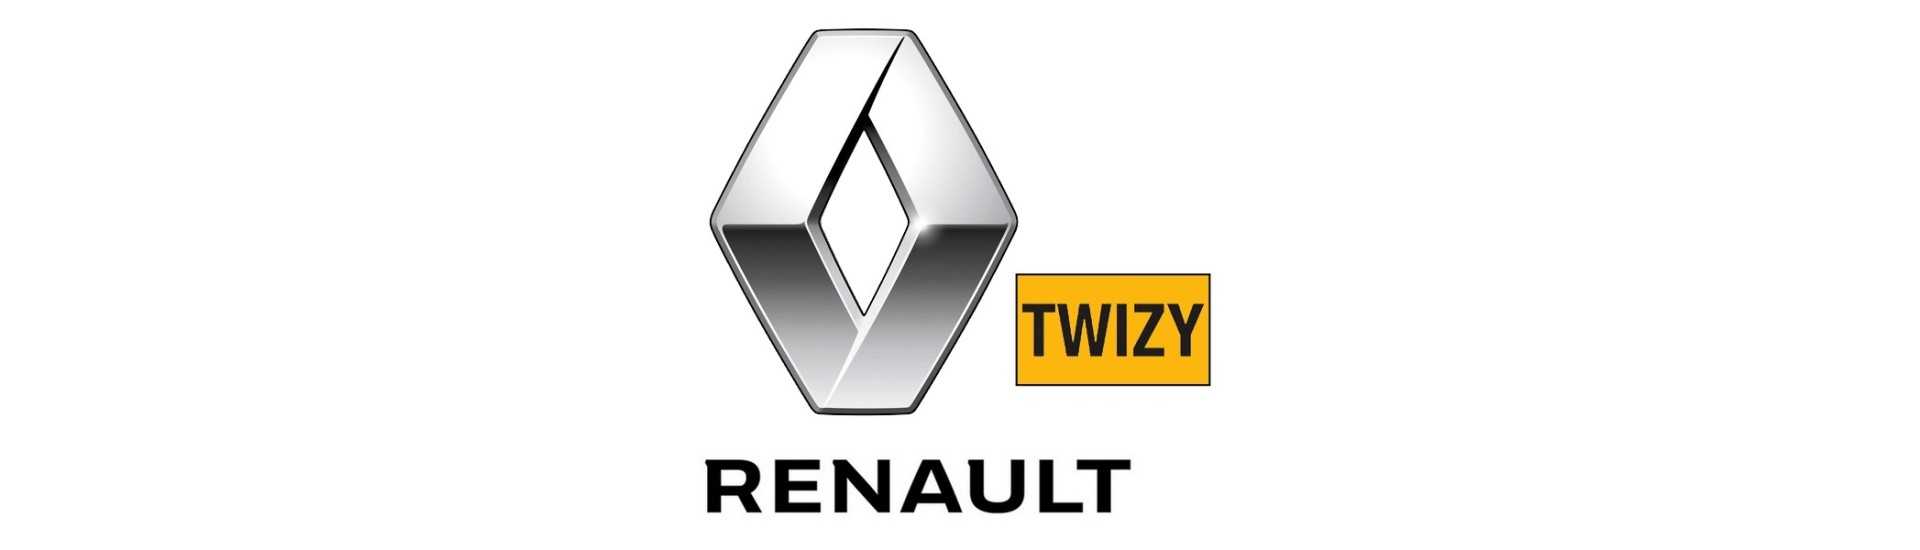 Palanca de freno de mano al mejor precio para coche sin carnet Renault